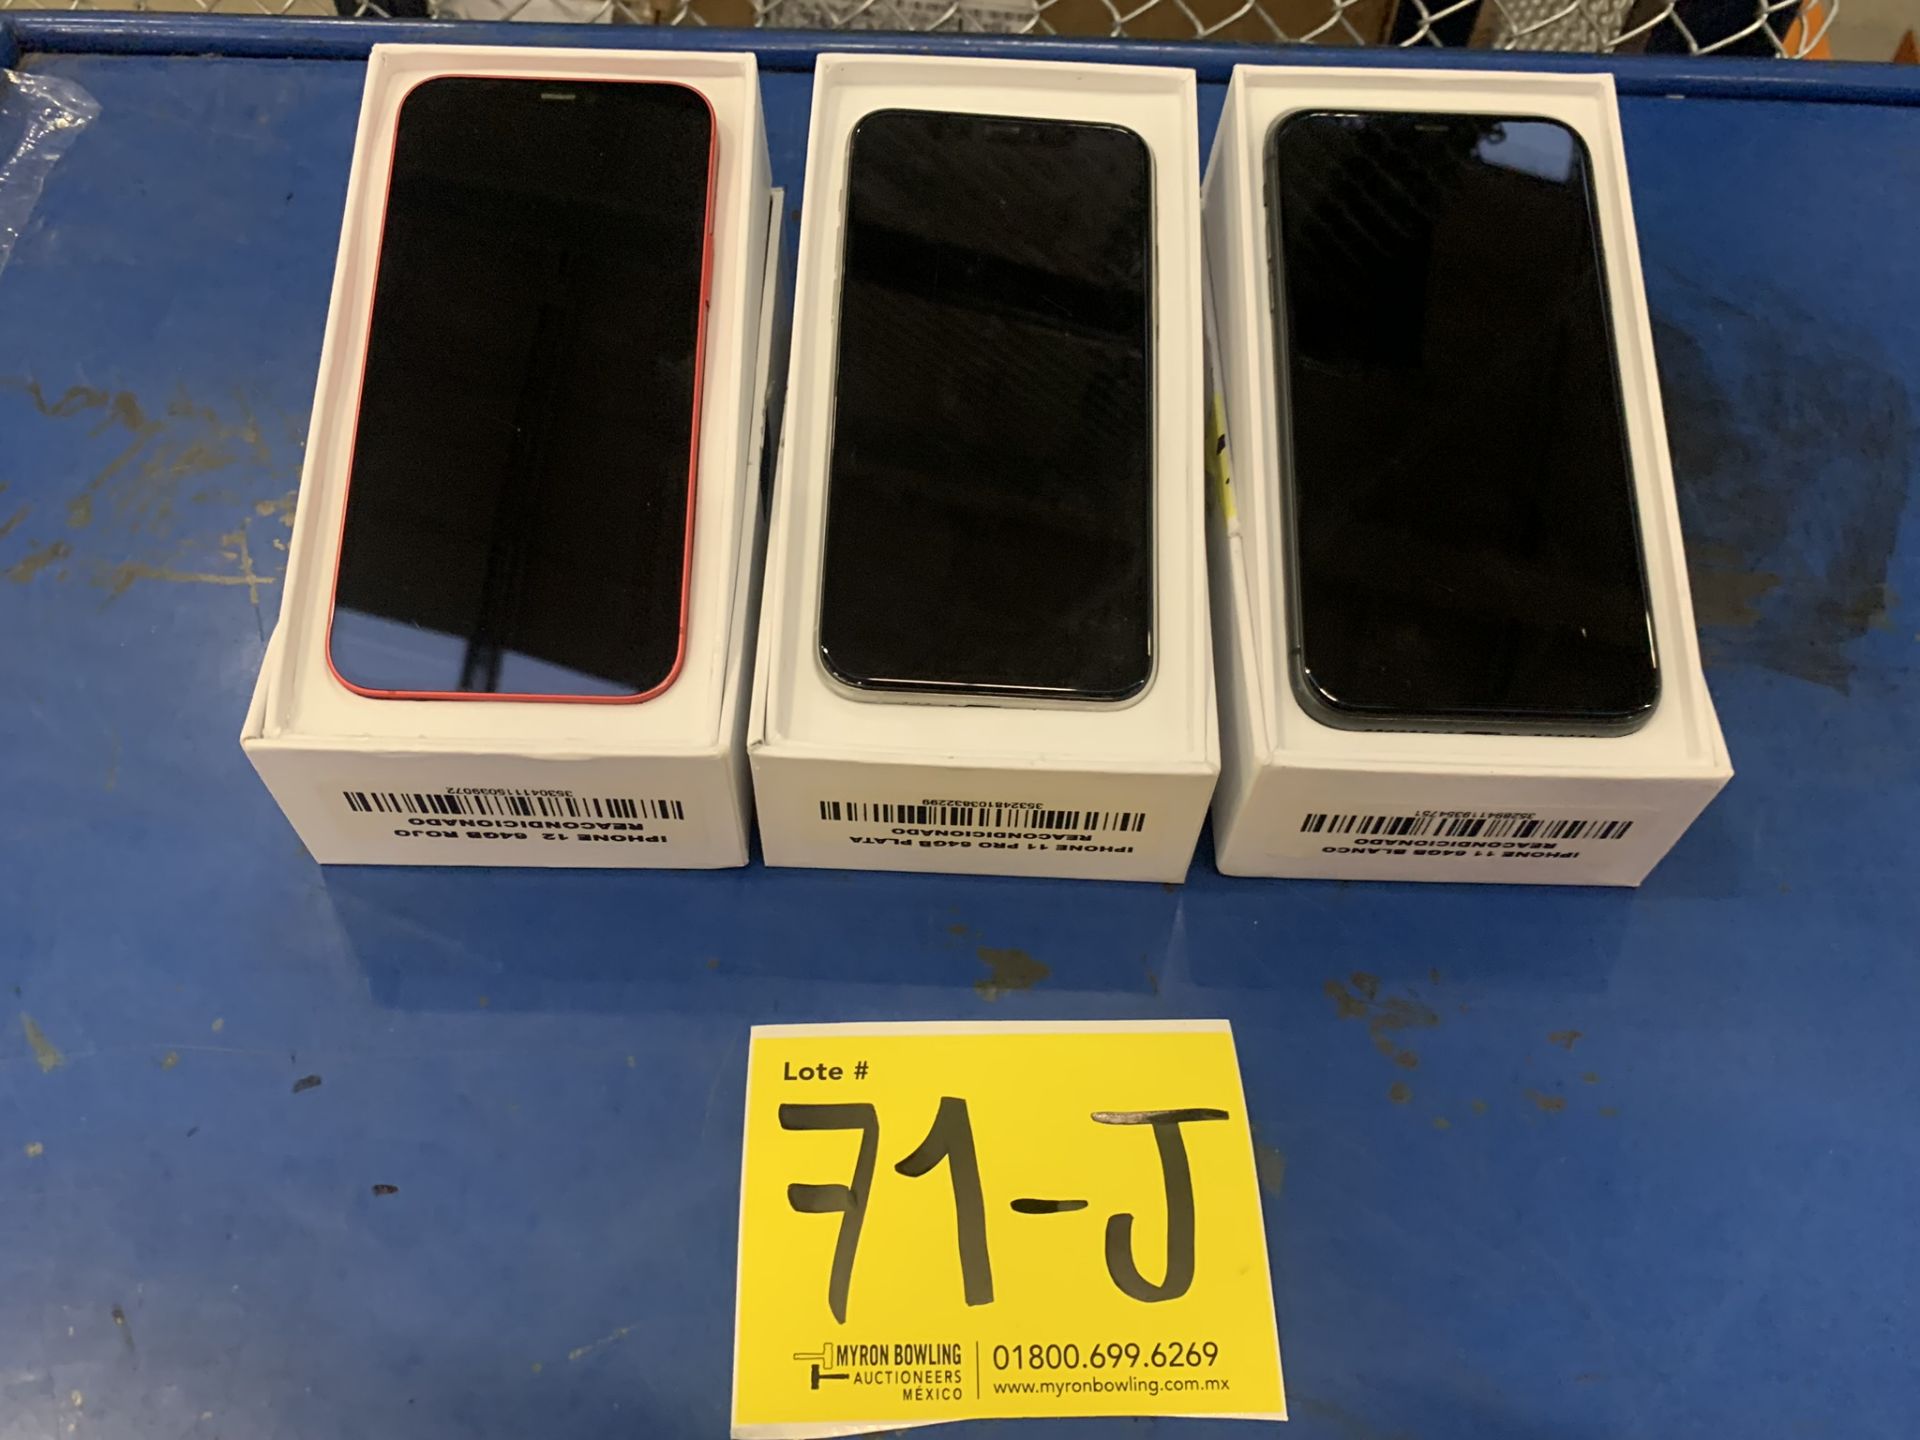 Lote De 3 Teléfonos Celular Contiene: 1 Iphone Marca Apple, Modelo 12, Color Rojo, 64 GB De Alm - Image 8 of 9